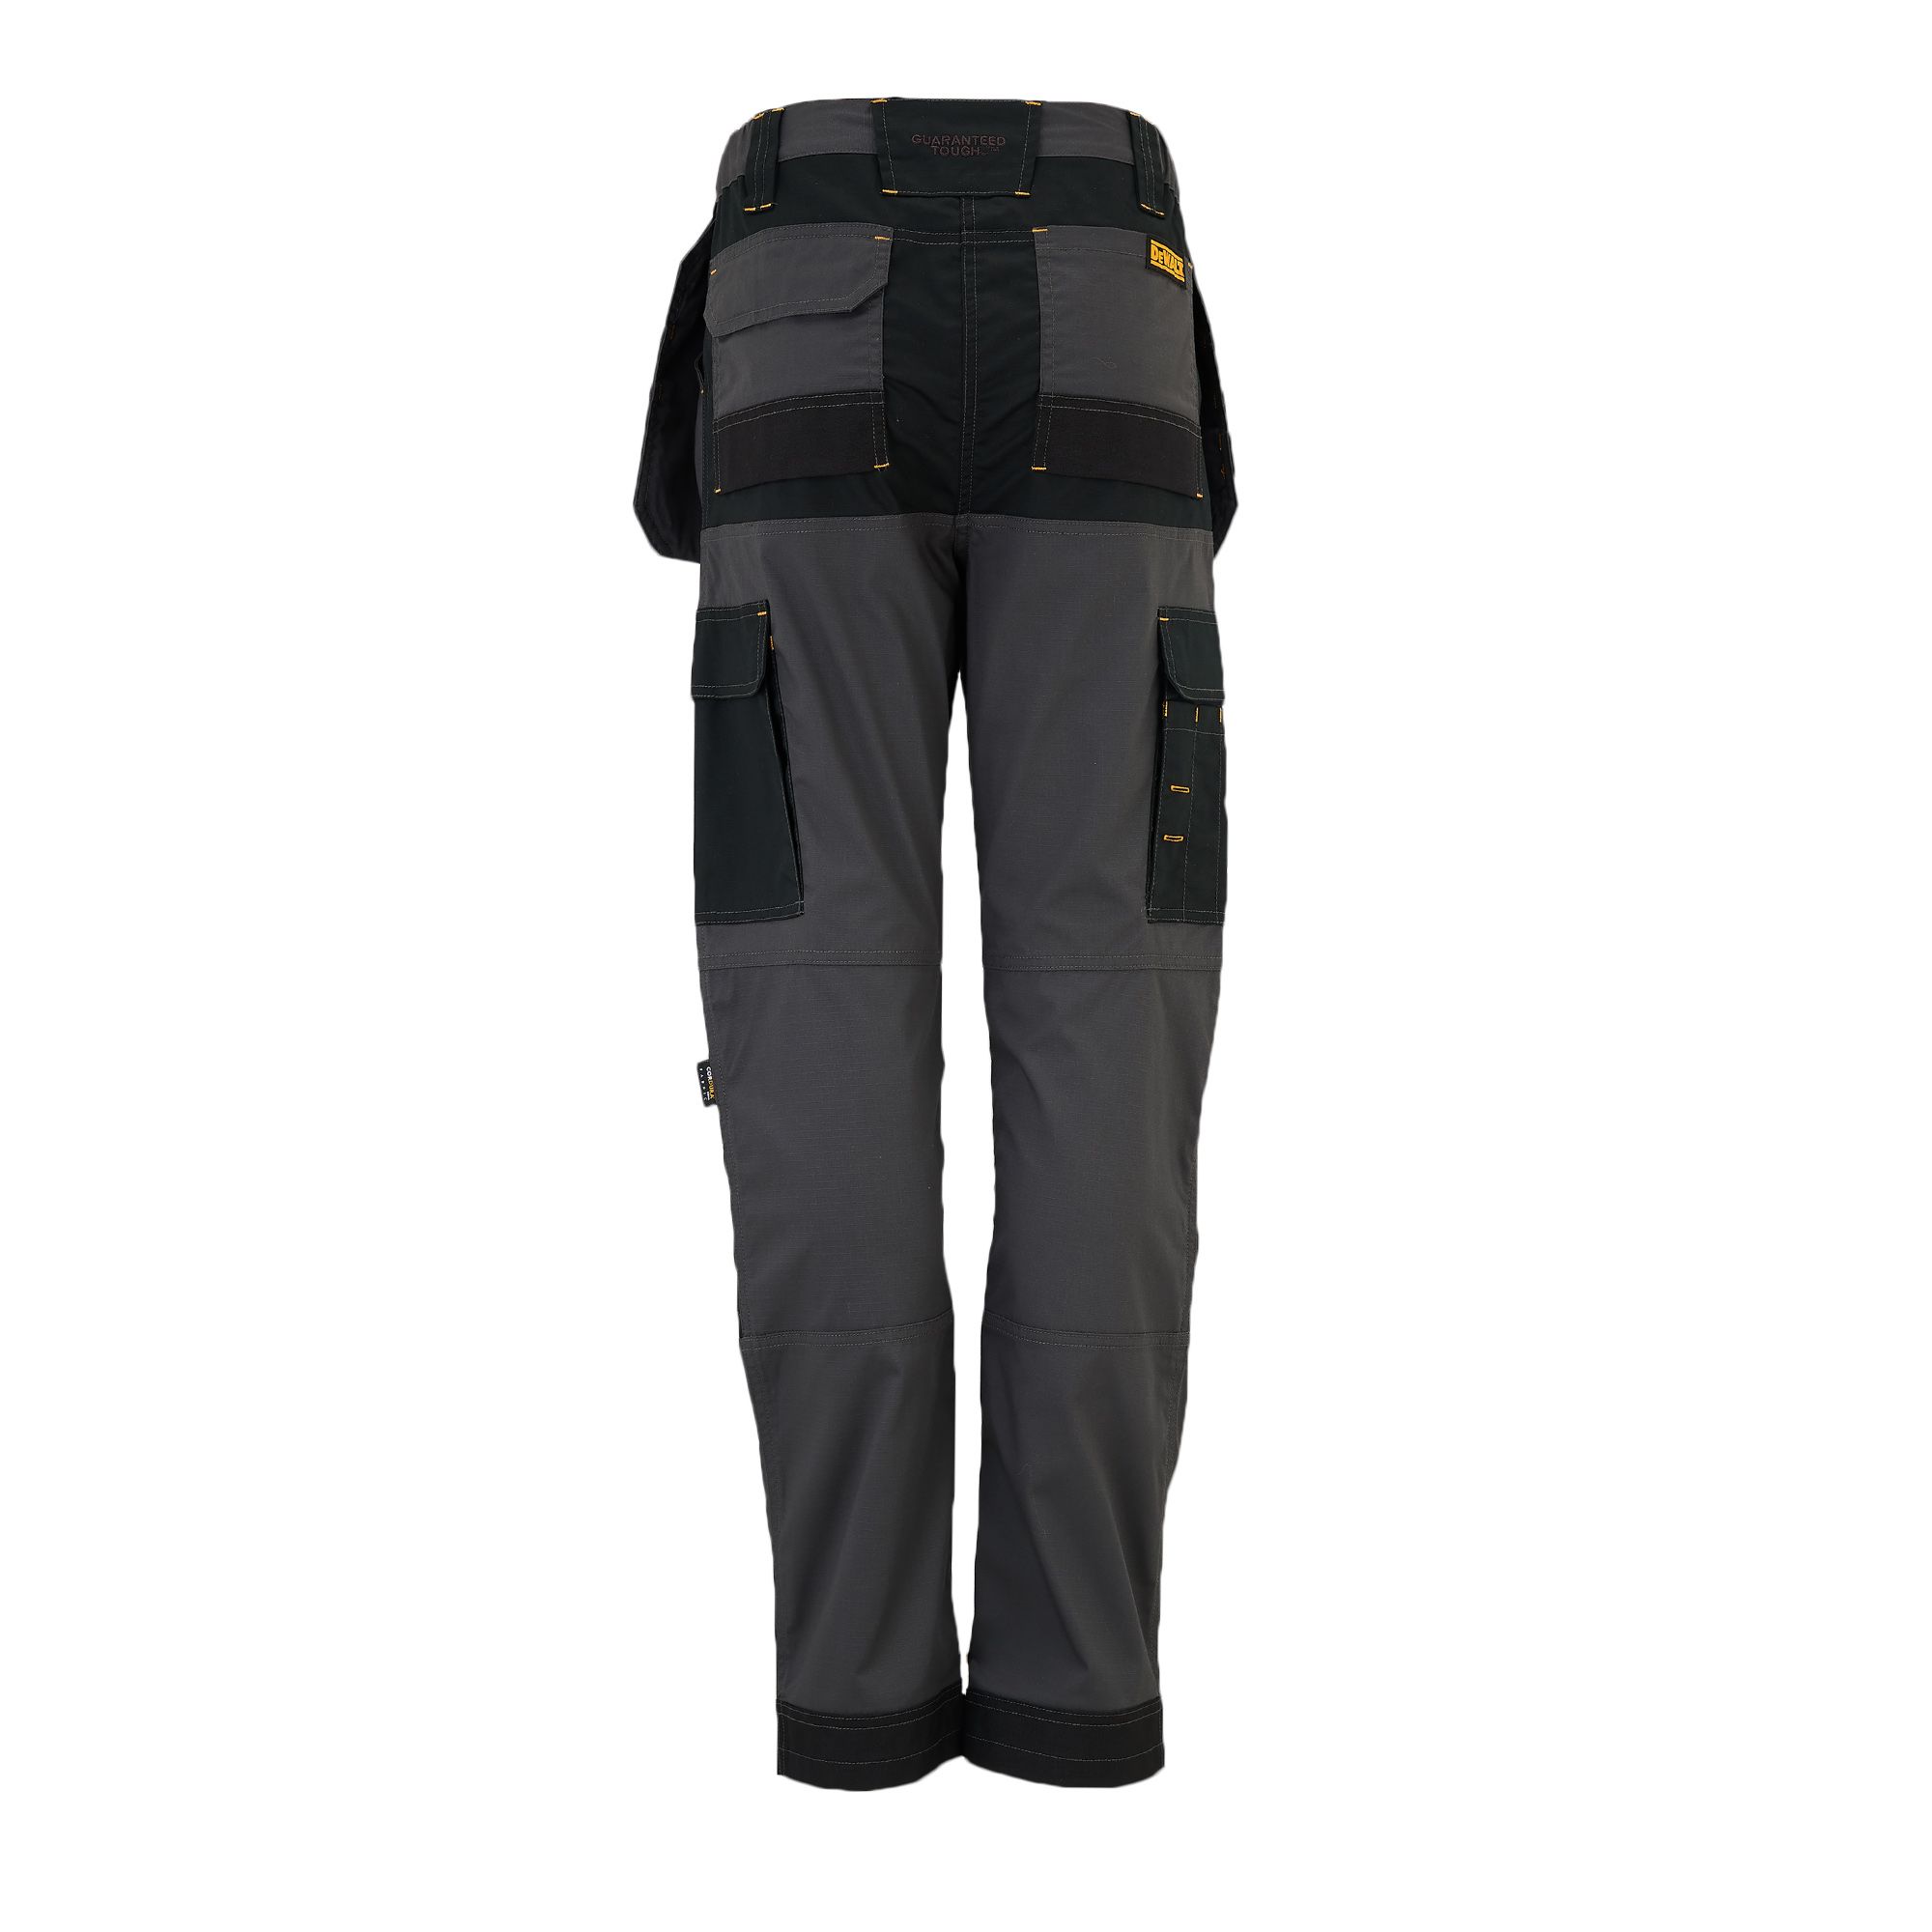 DeWalt Roseville Black & grey Women's Trousers, Size 16 L31"